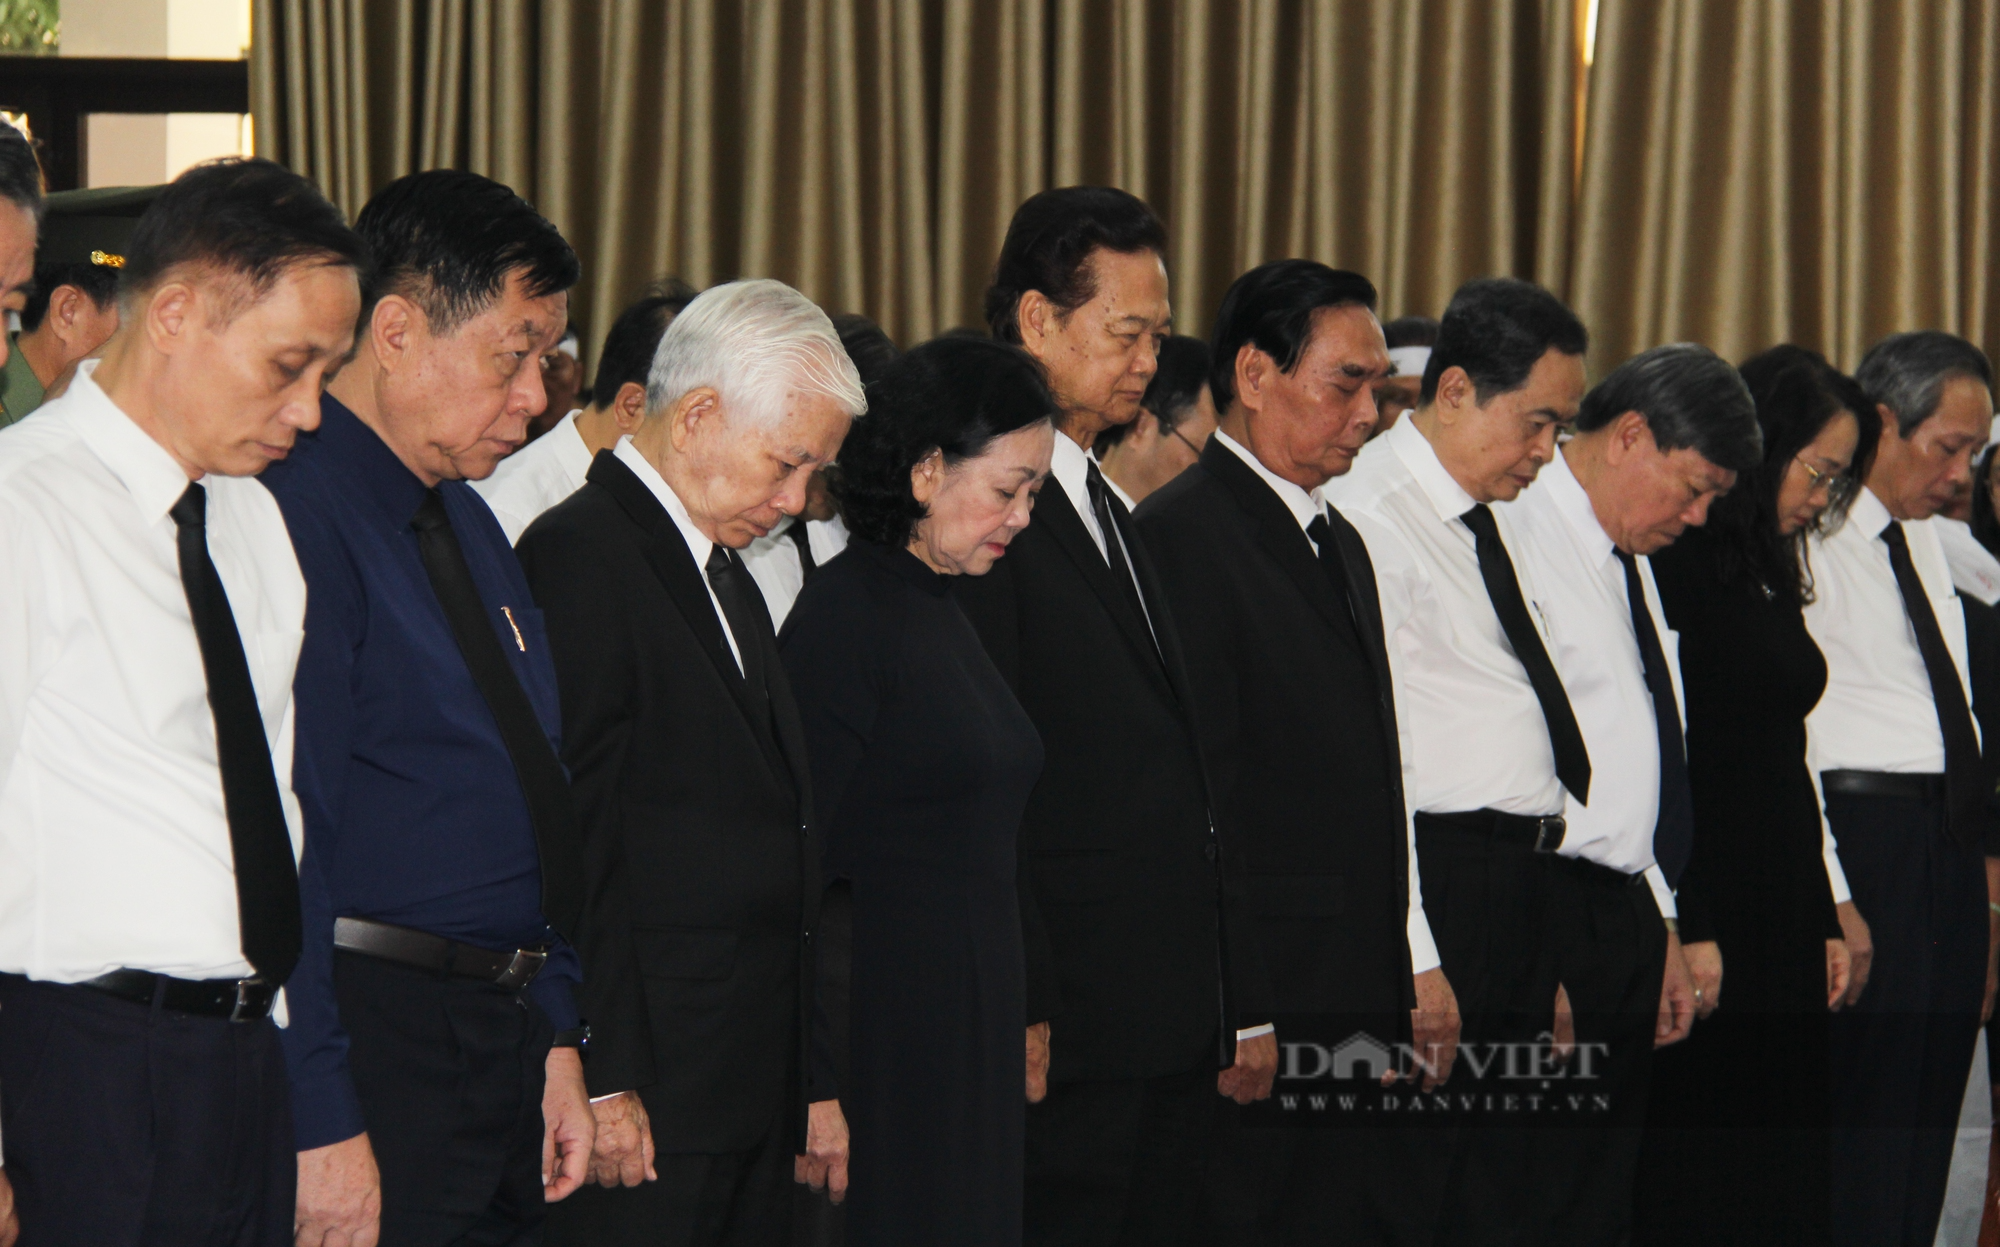 Đang diễn ra tang lễ nguyên Trưởng Ban Tổ chức T.Ư Lê Phước Thọ - Ảnh 4.